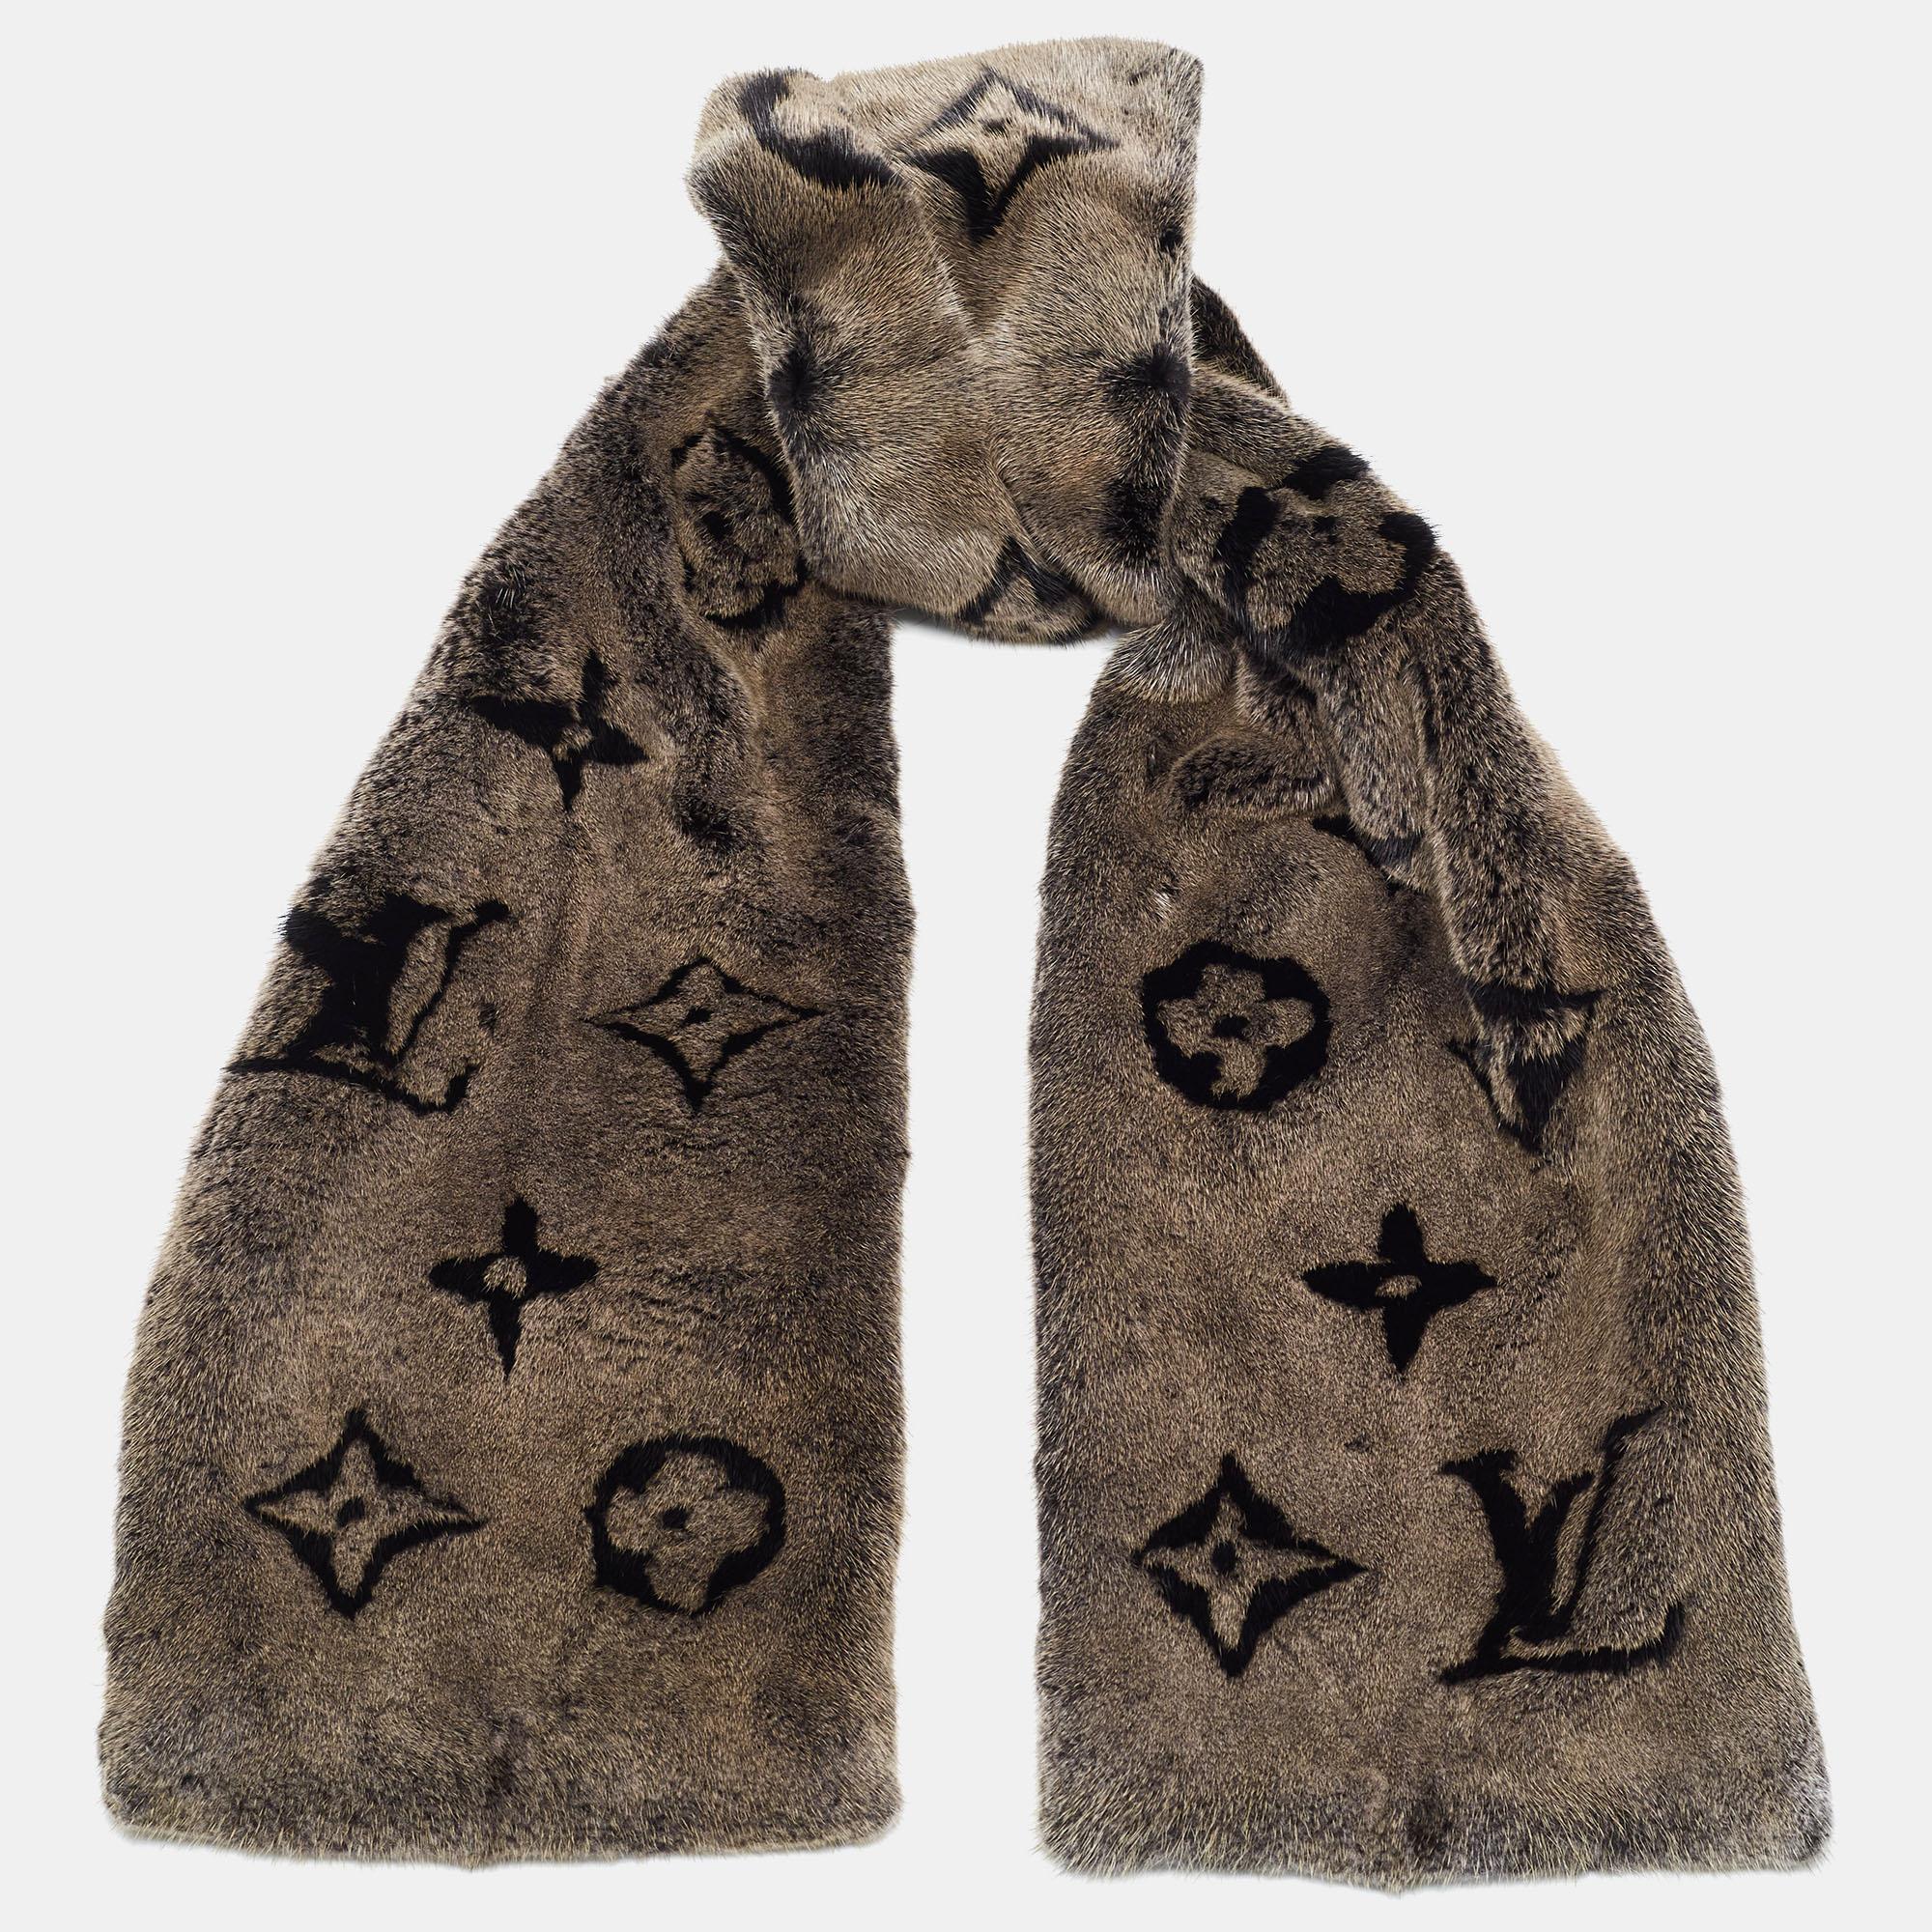 Der perfekte Stilbegleiter an kalten Tagen ist dieser Louis Vuitton Schal. Das Stück aus Nerzpelz ist über und über mit dem Monogram der Marke verziert.

